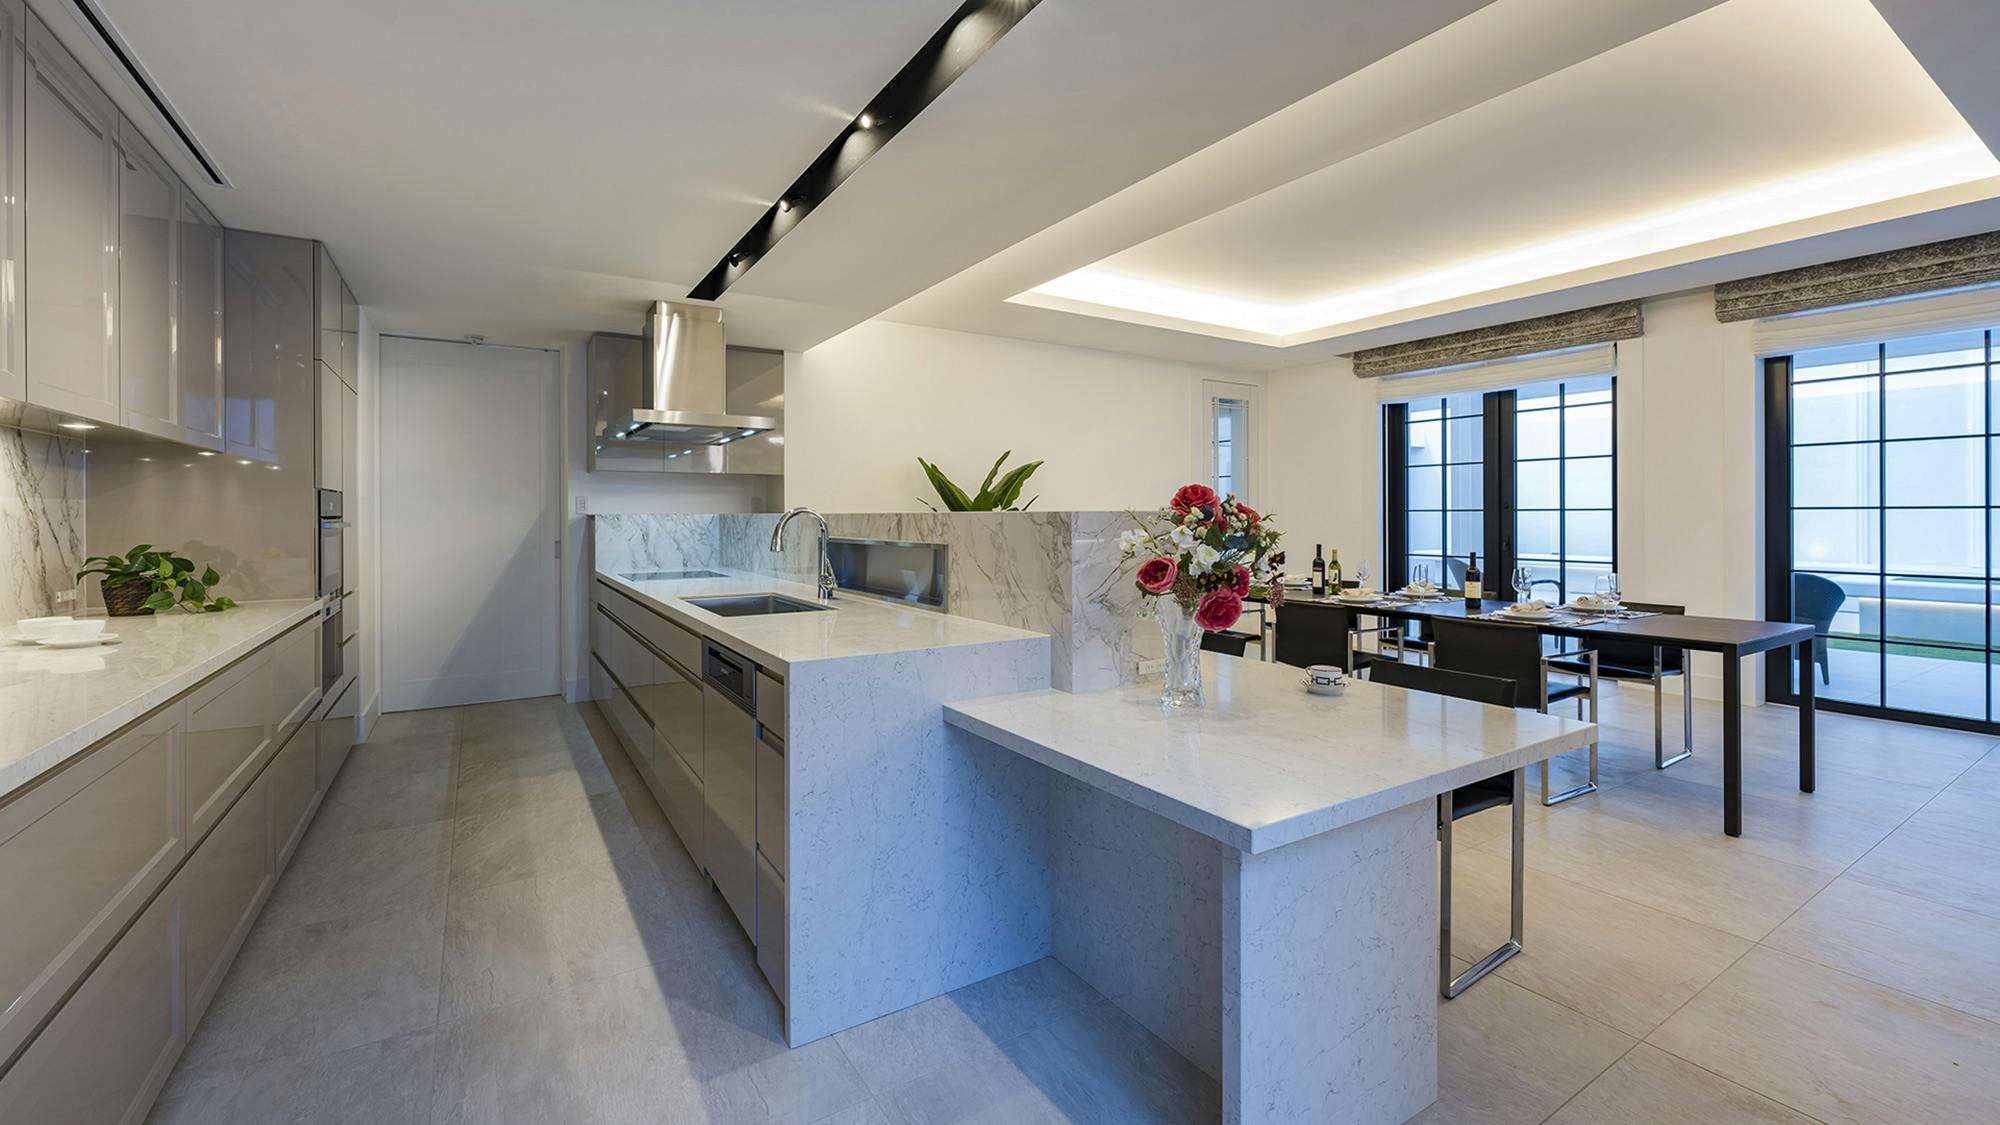 Numero immagine 32 della sezione corrente di {{Dekton and Silestone enhance the kitchen and bathroom design in a Tokyo home}} di Cosentino Italia